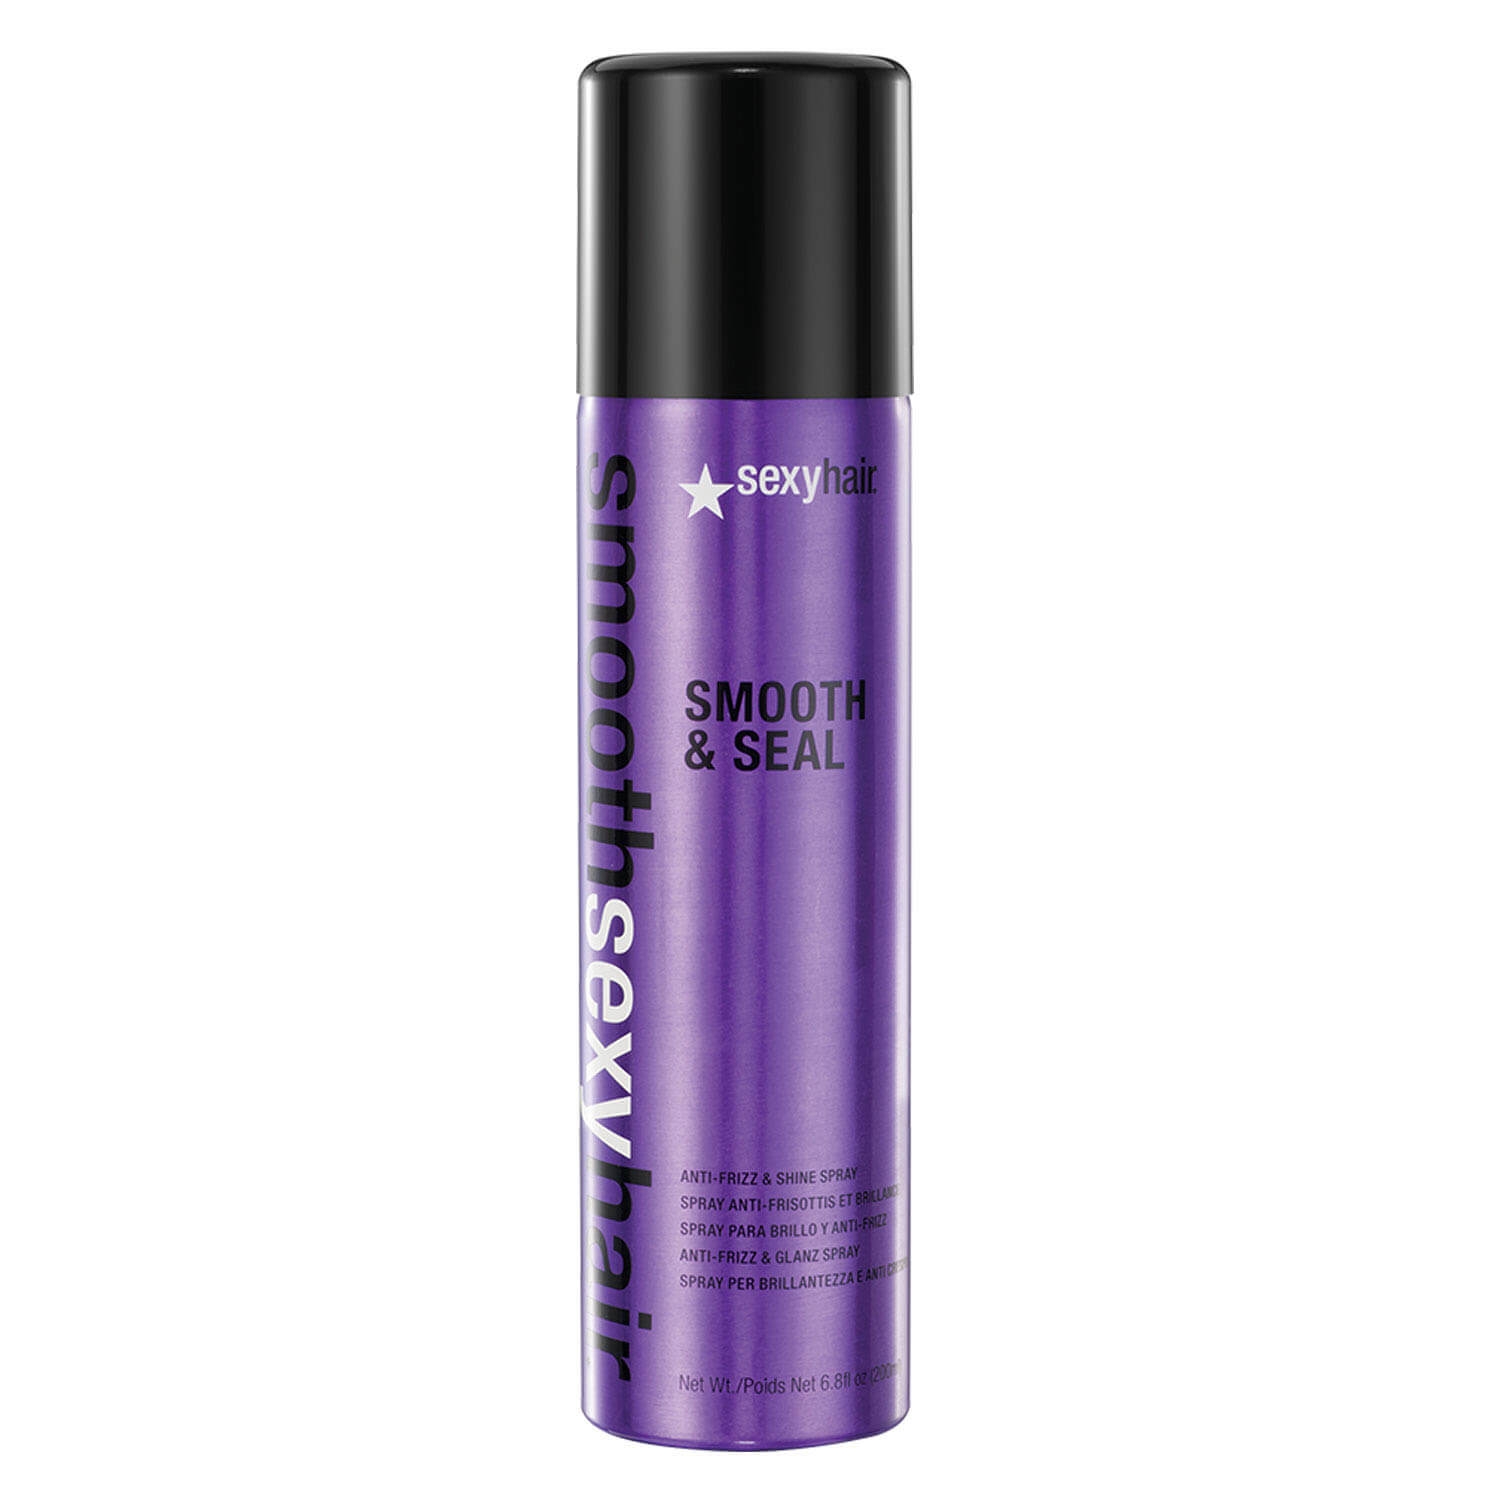 Produktbild von Smooth Sexy Hair - Smooth & Seal Anti-Frizz & Shine Spray